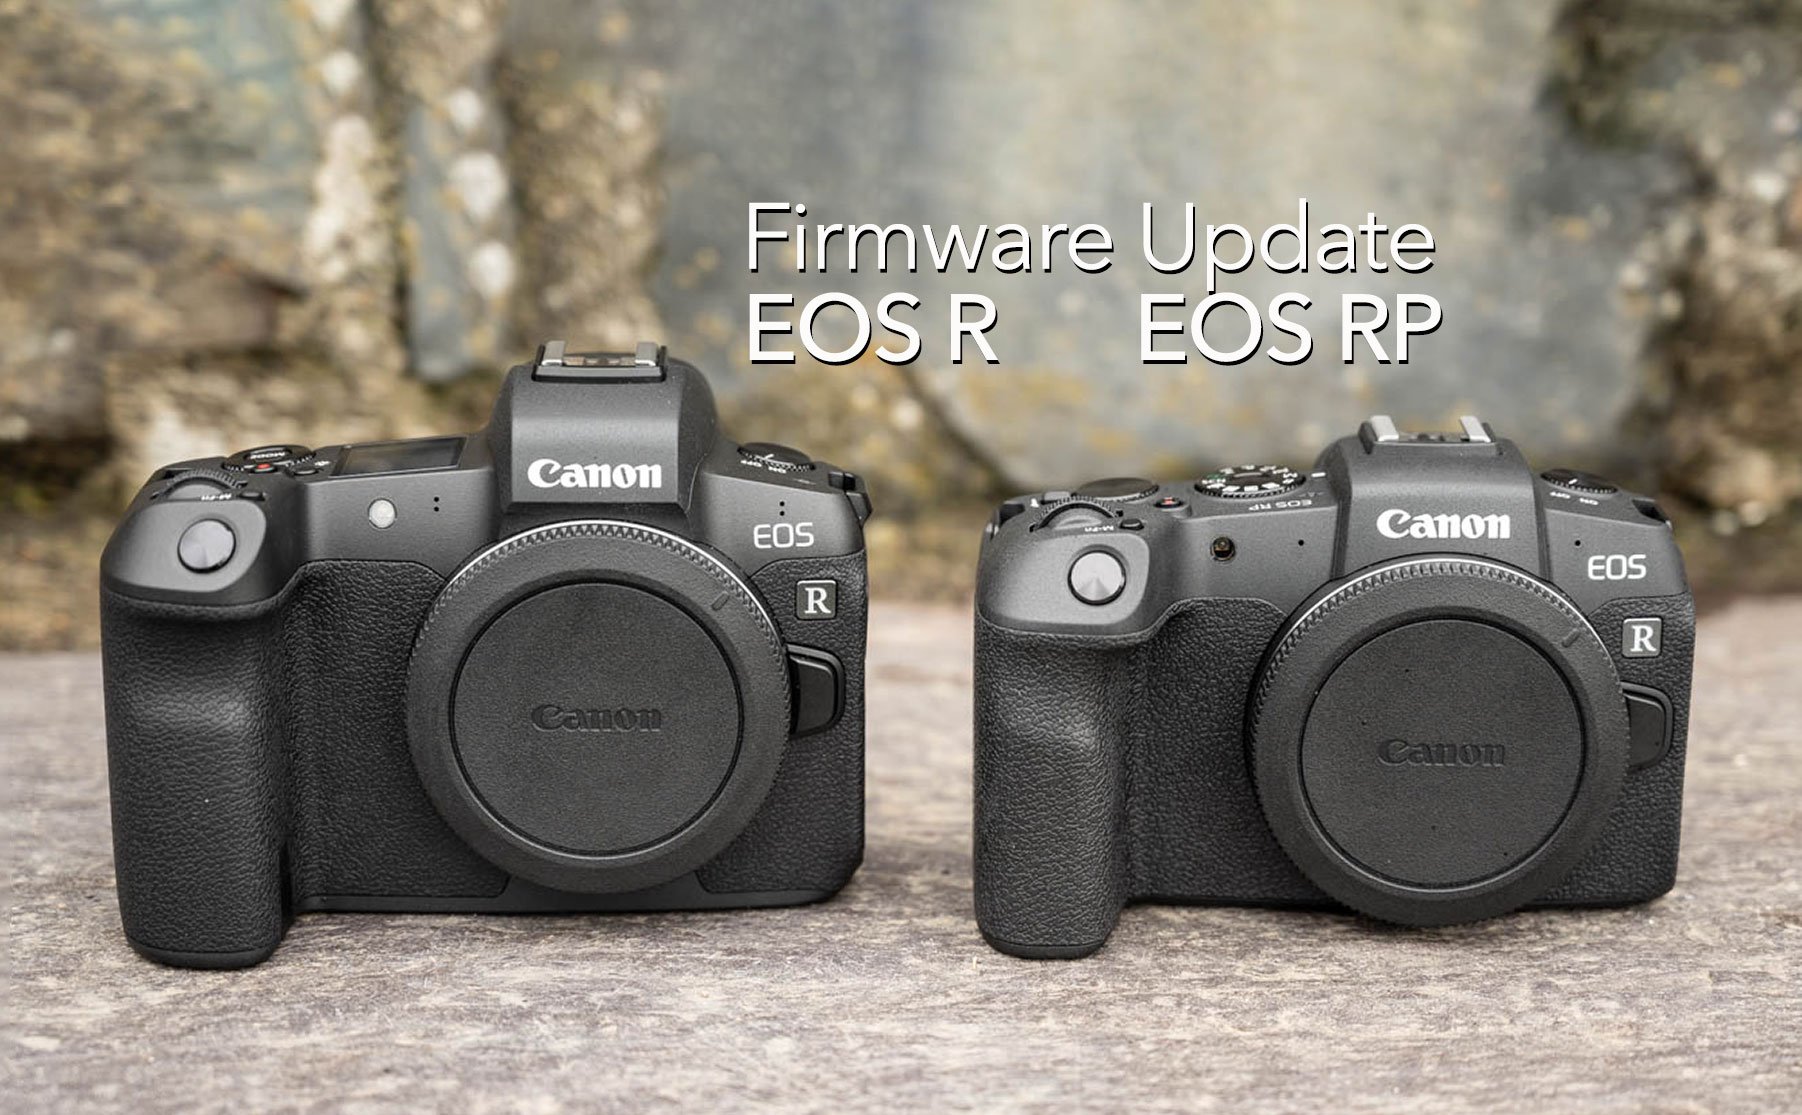 Canon công bố bản Firmware mới cho EOS R và RP: cải thiện khả năng lấy nét theo mắt ở khoảng cách xa